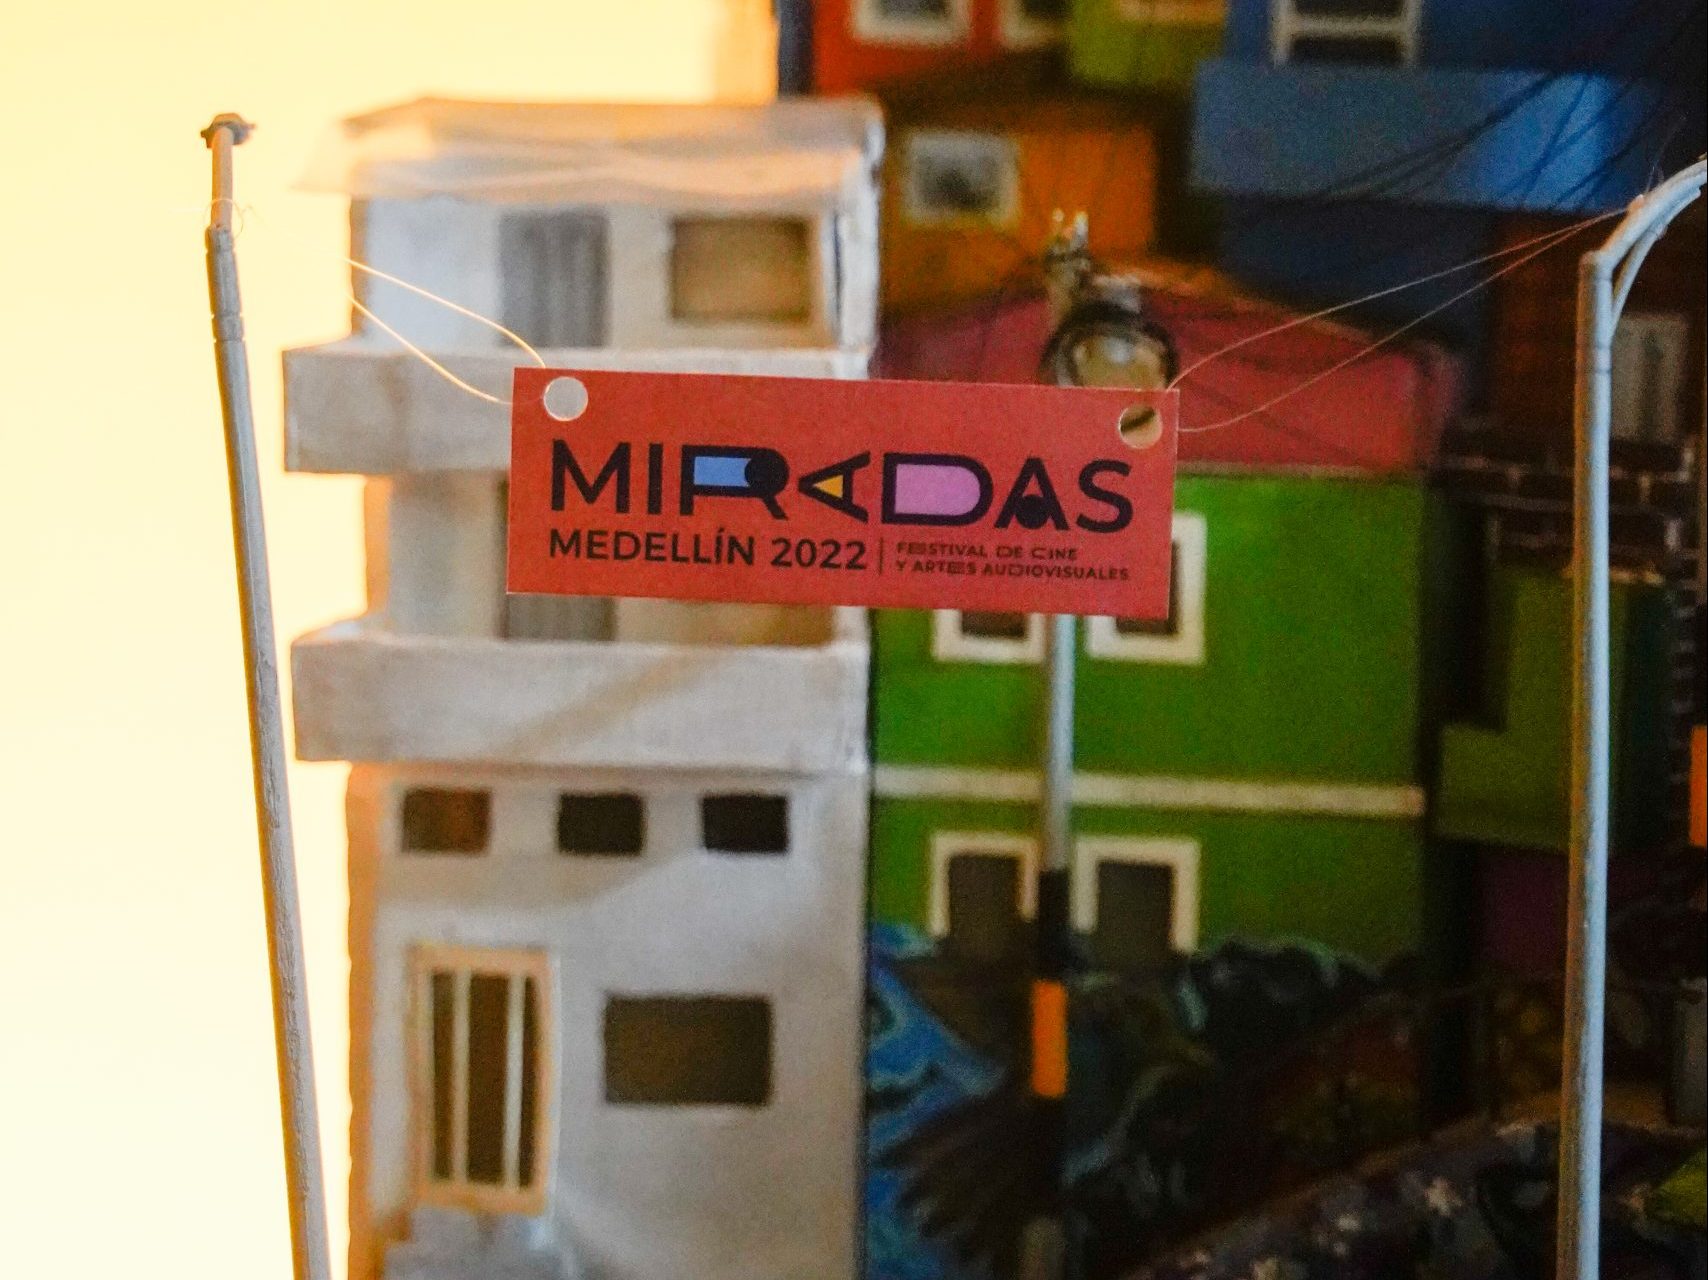 El festival de cine y artes audiovisuales, Miradas, llega a la cuadra